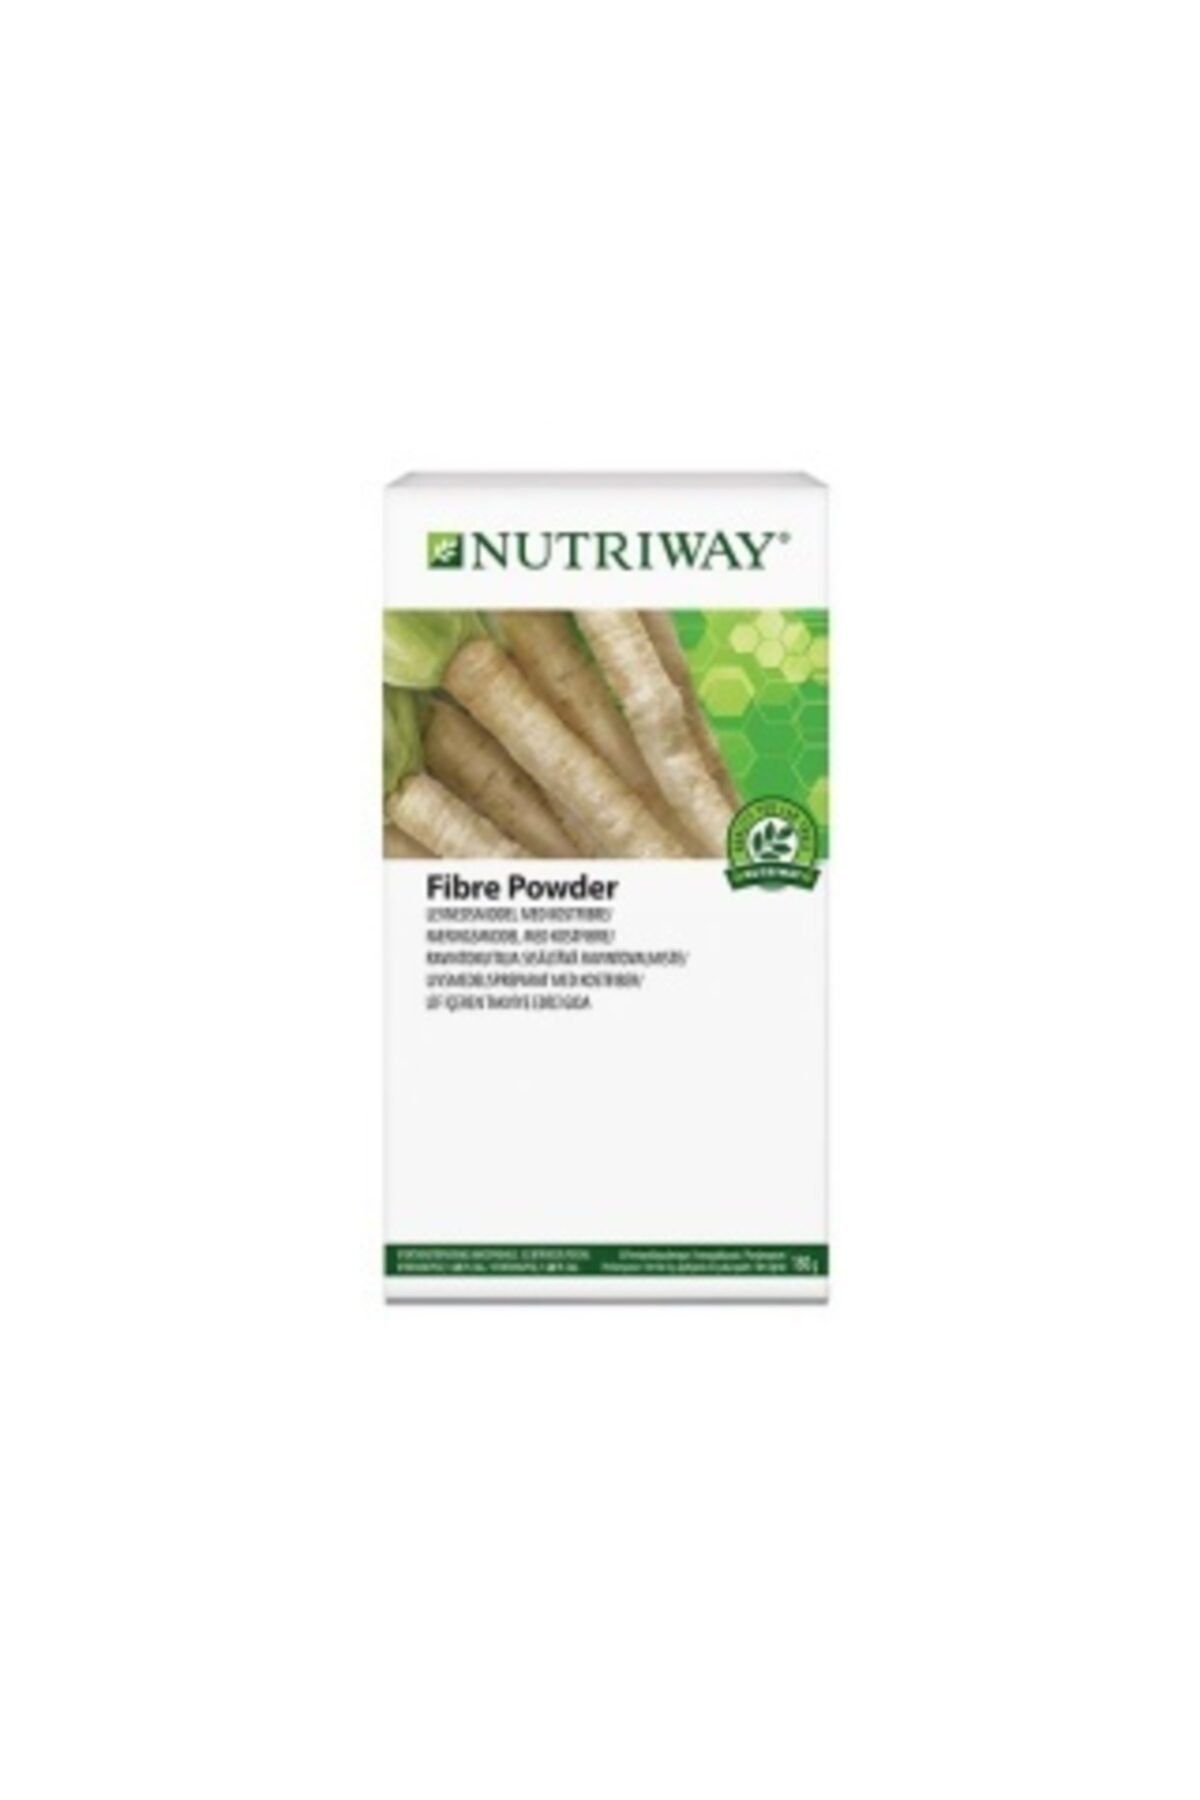 Amway Fibre Powder Nutrıway  Kutu 30 Paket